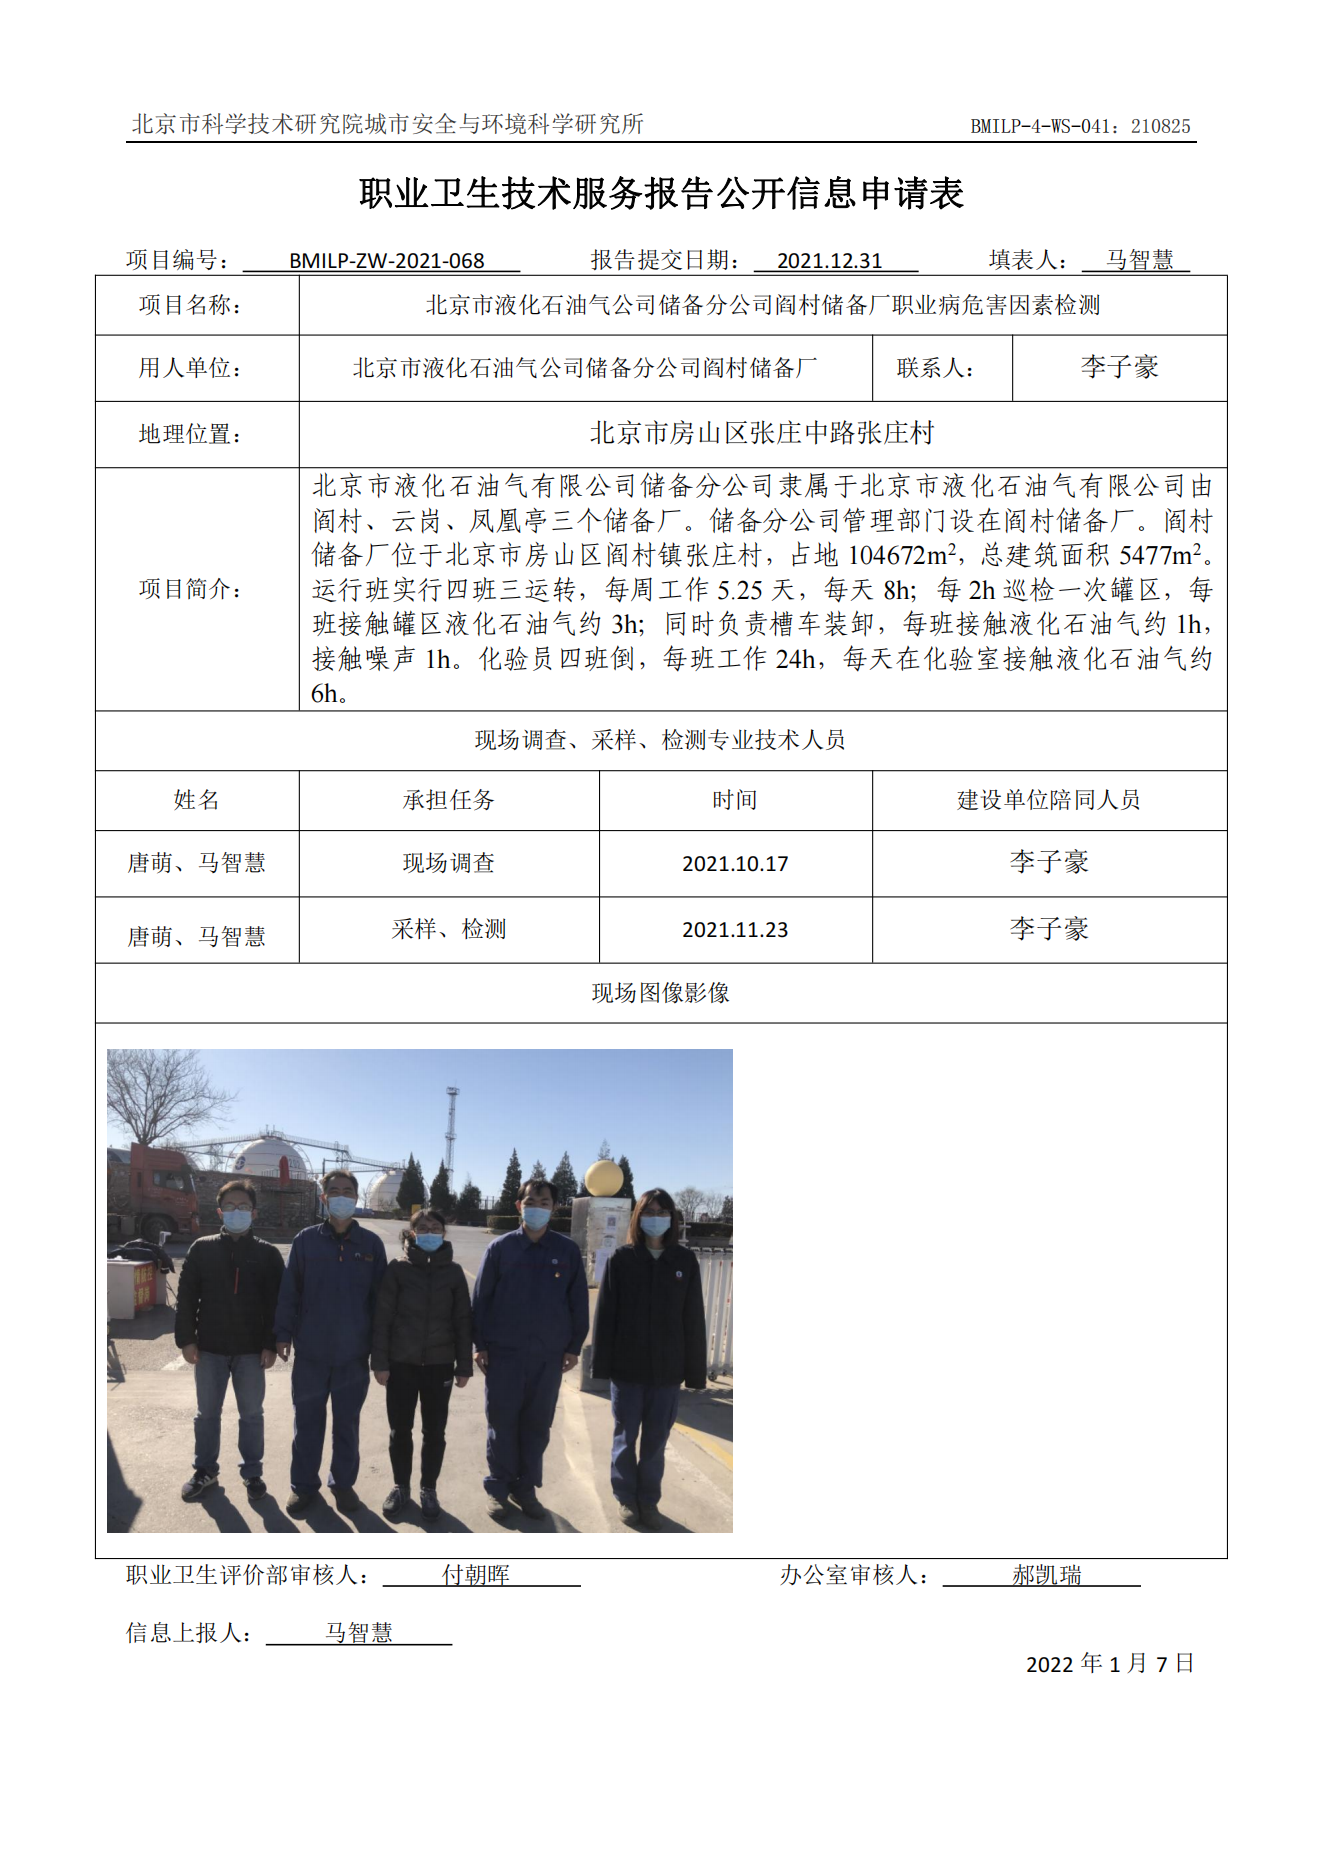 北京市液化石油气公司储备分公司阎村储备厂职业病危害因素检测